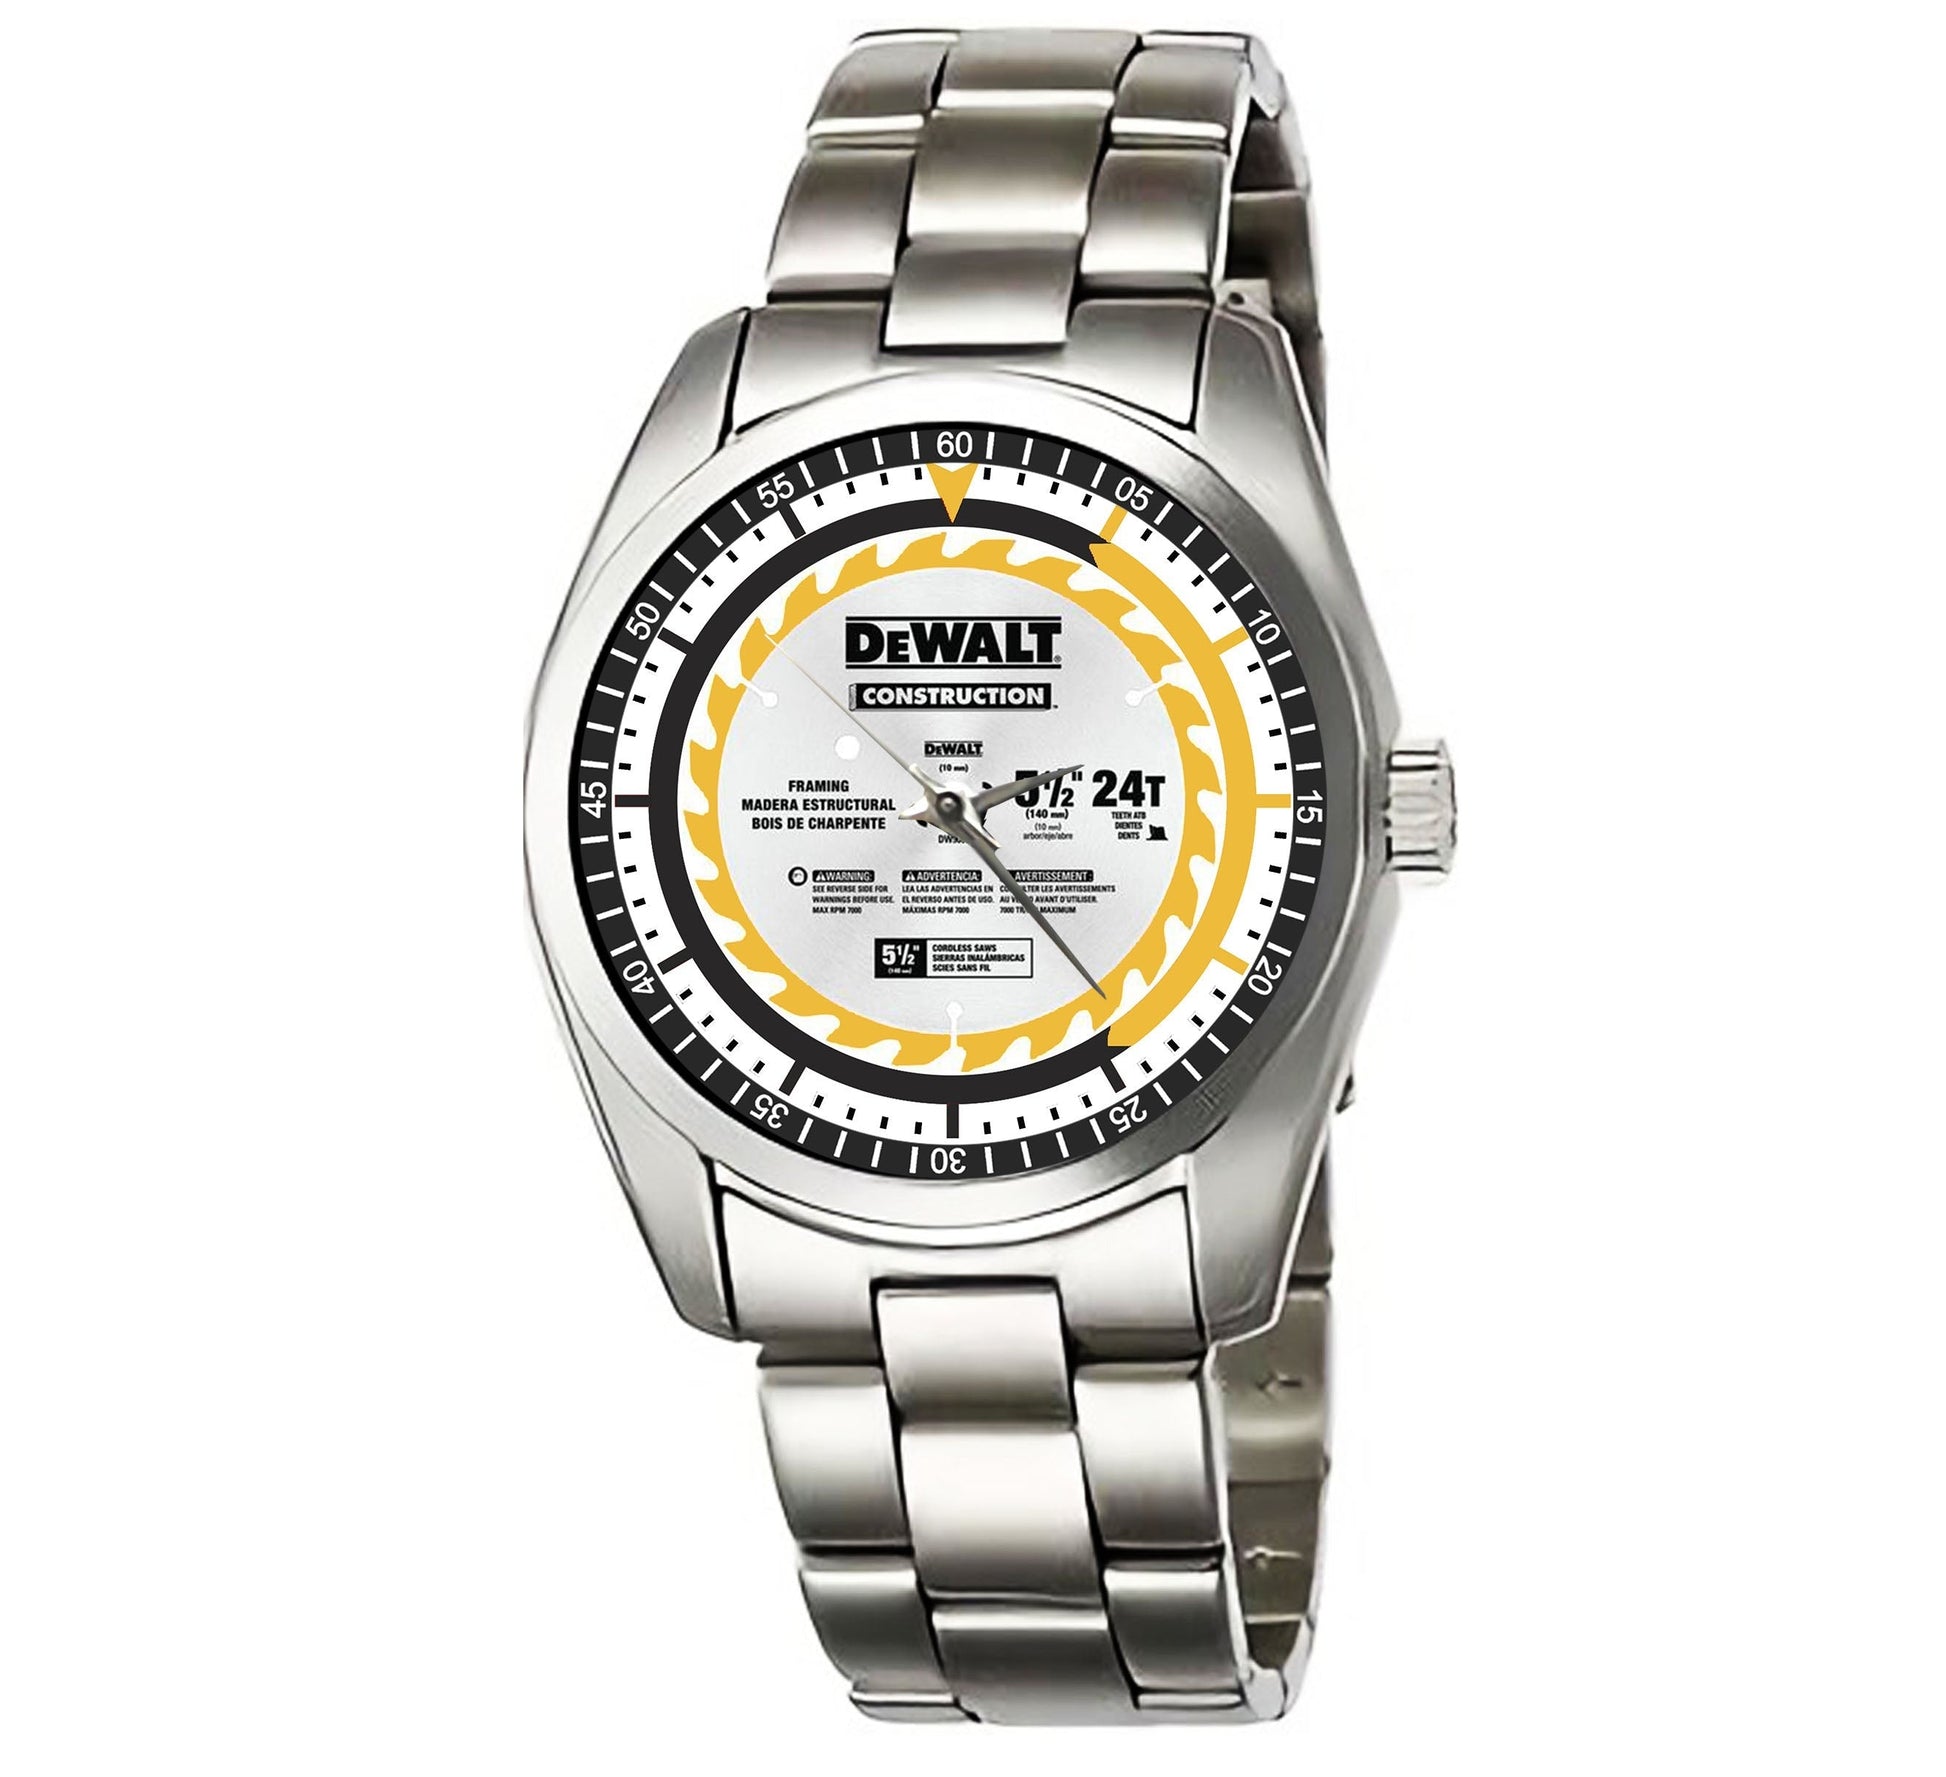 Dewalt dw9066 Watches Bdk52